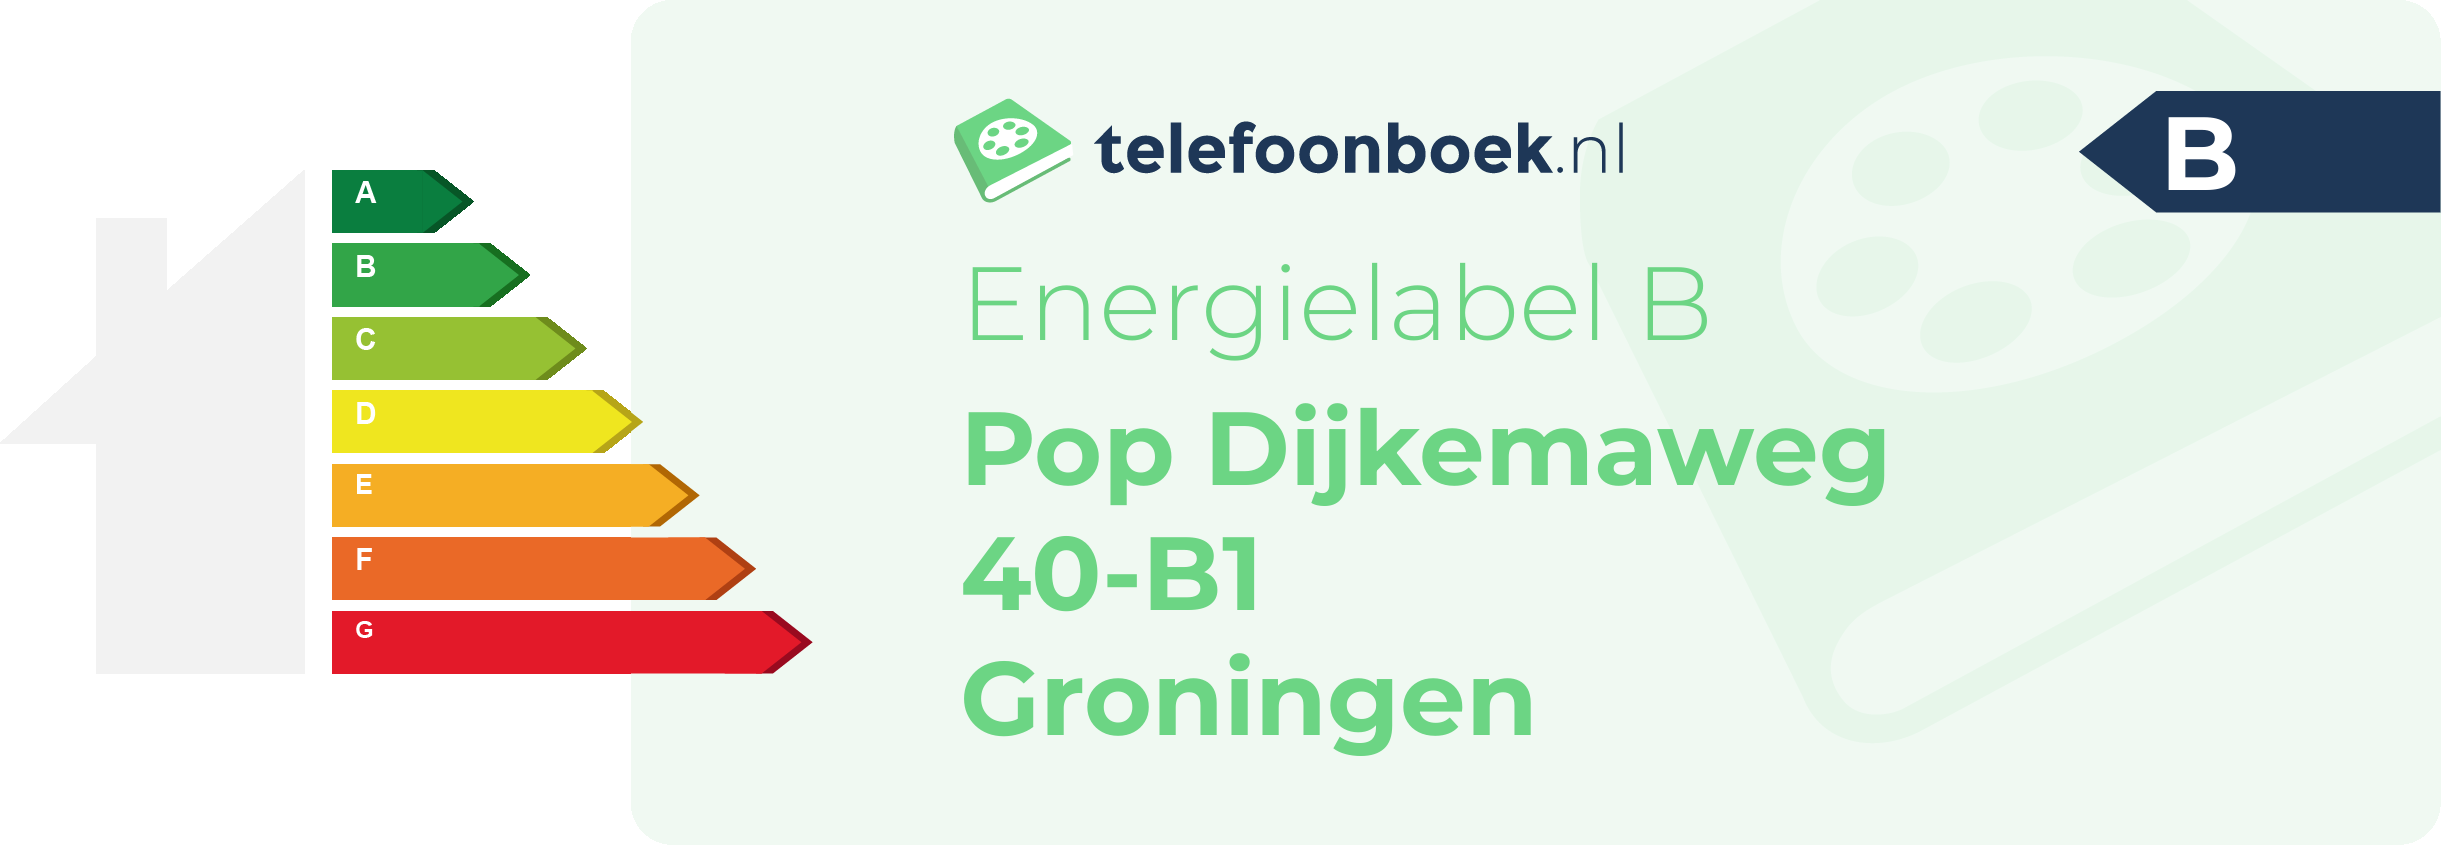 Energielabel Pop Dijkemaweg 40-B1 Groningen